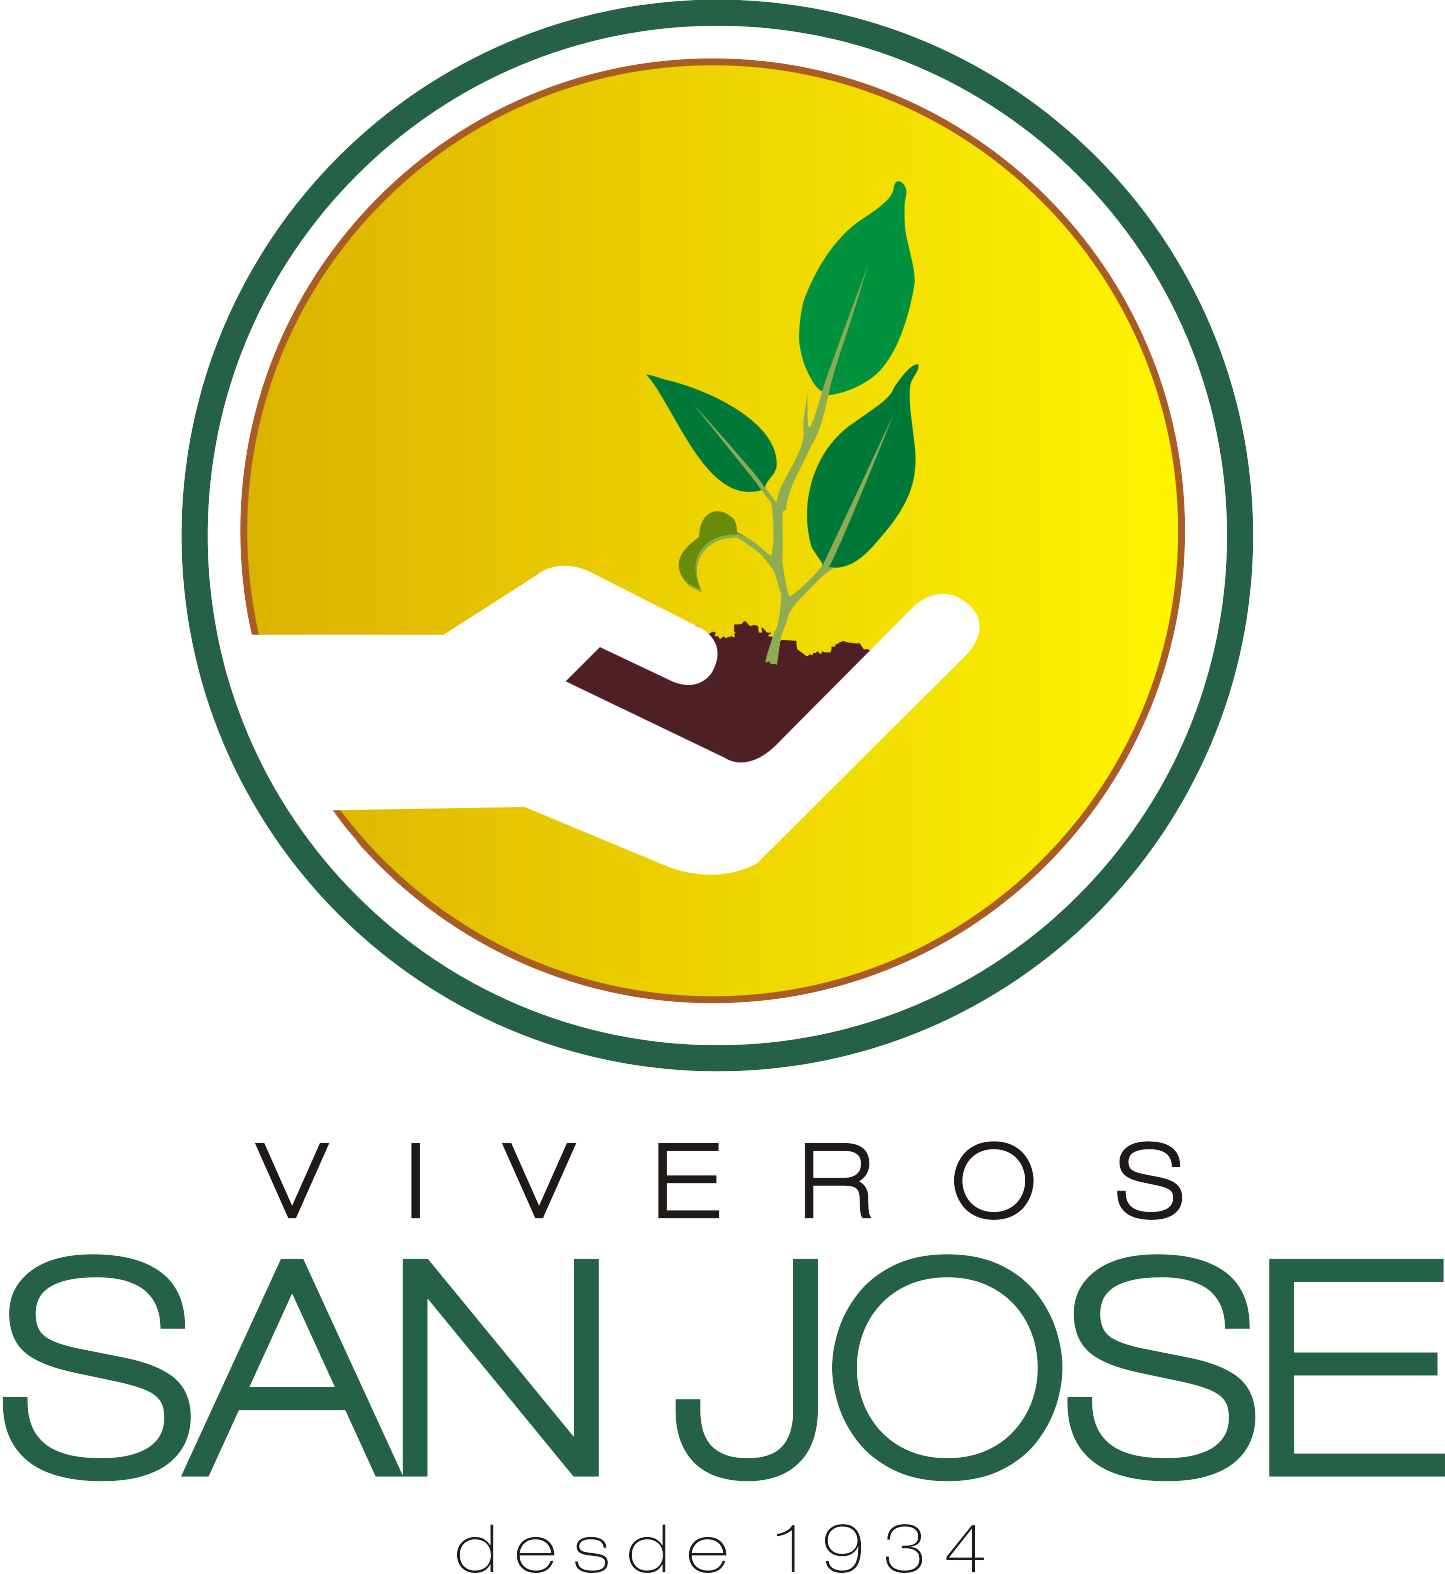 Vivero San Jose (La Calera)